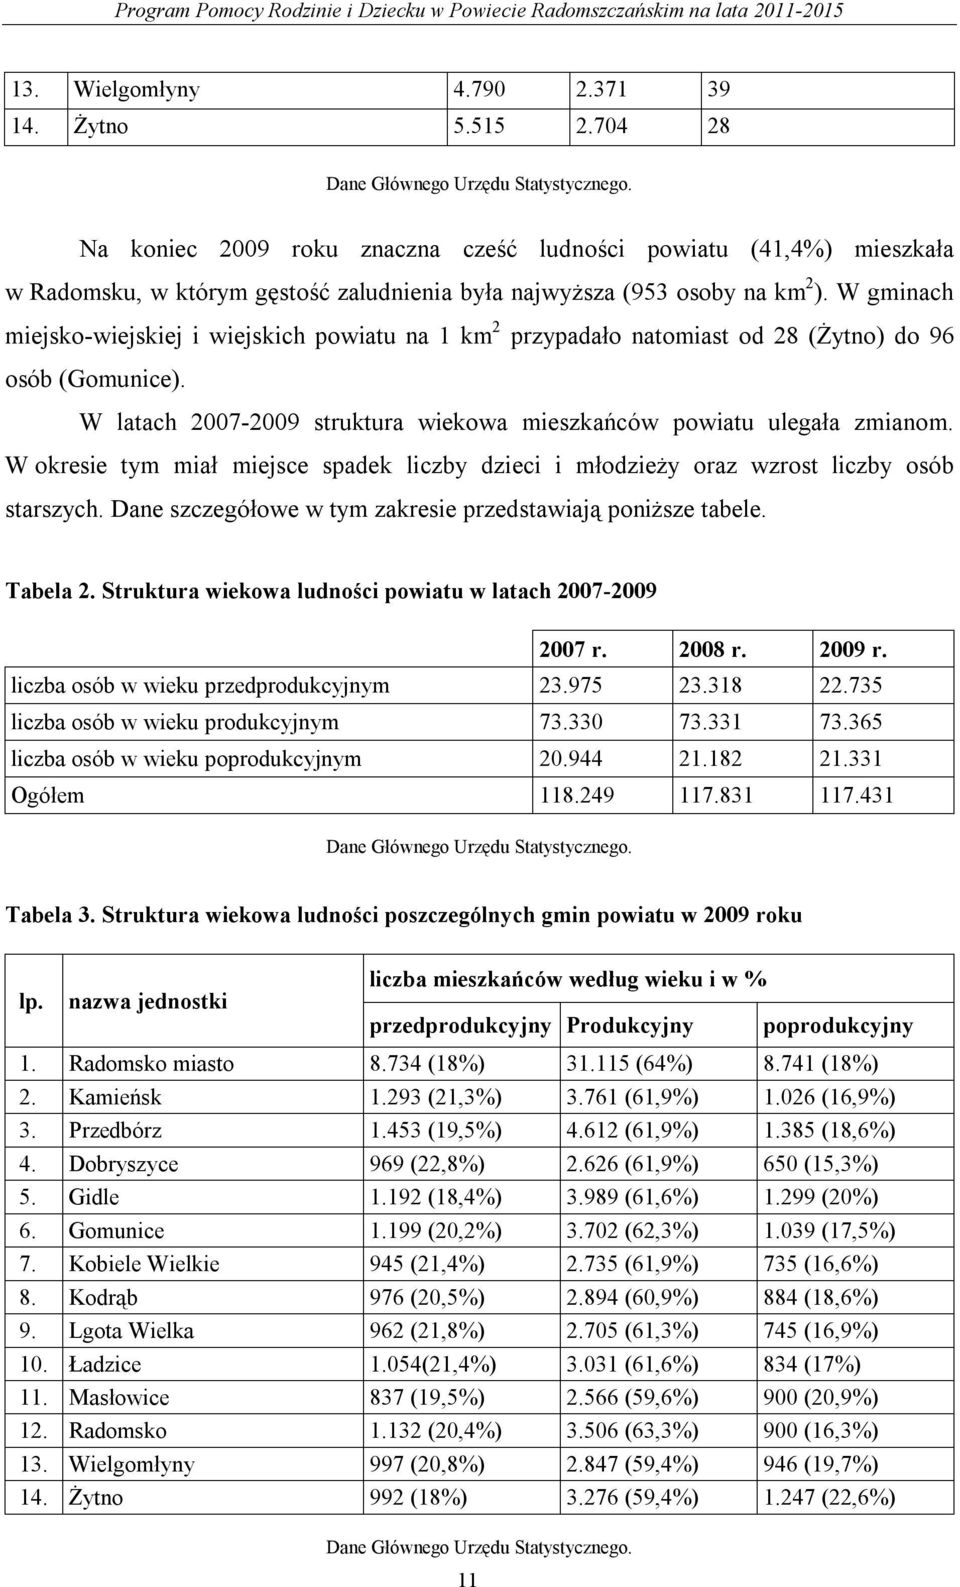 W gminach miejsko-wiejskiej i wiejskich powiatu na 1 km 2 przypadało natomiast od 28 (Żytno) do 96 osób (Gomunice). W latach 2007-2009 struktura wiekowa mieszkańców powiatu ulegała zmianom.